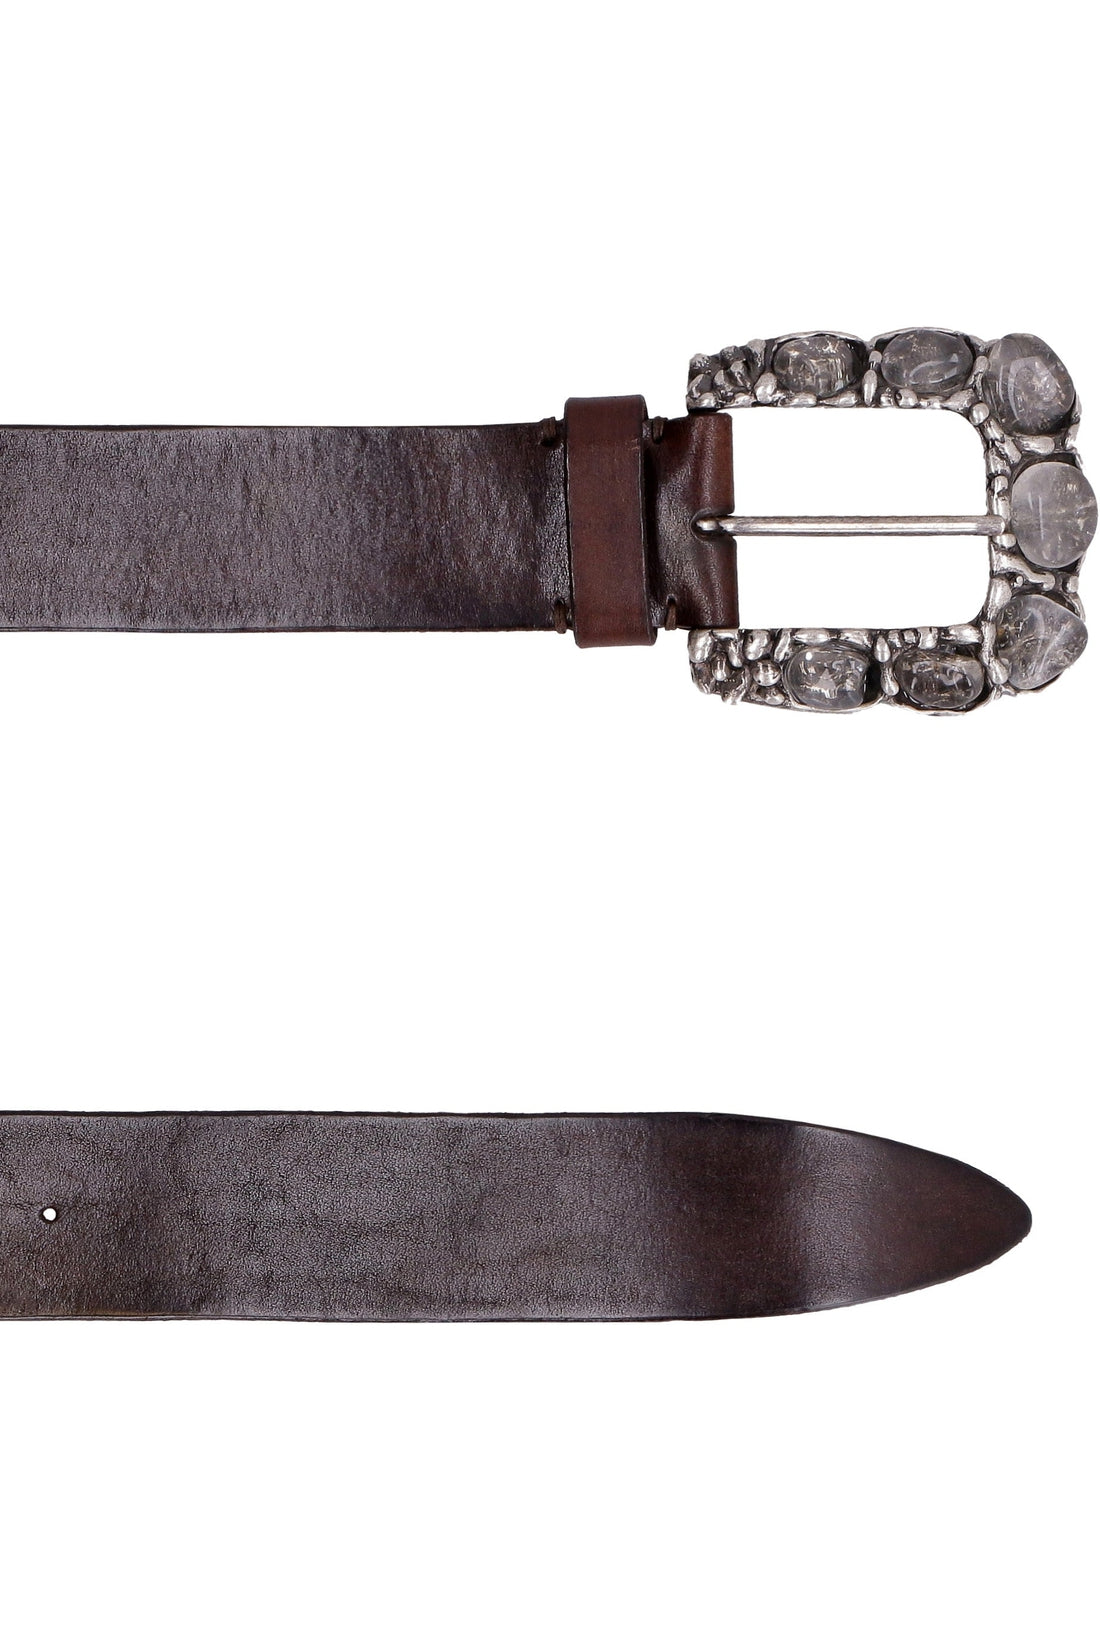 Parosh-OUTLET-SALE-Embellished buckle leather belt-ARCHIVIST